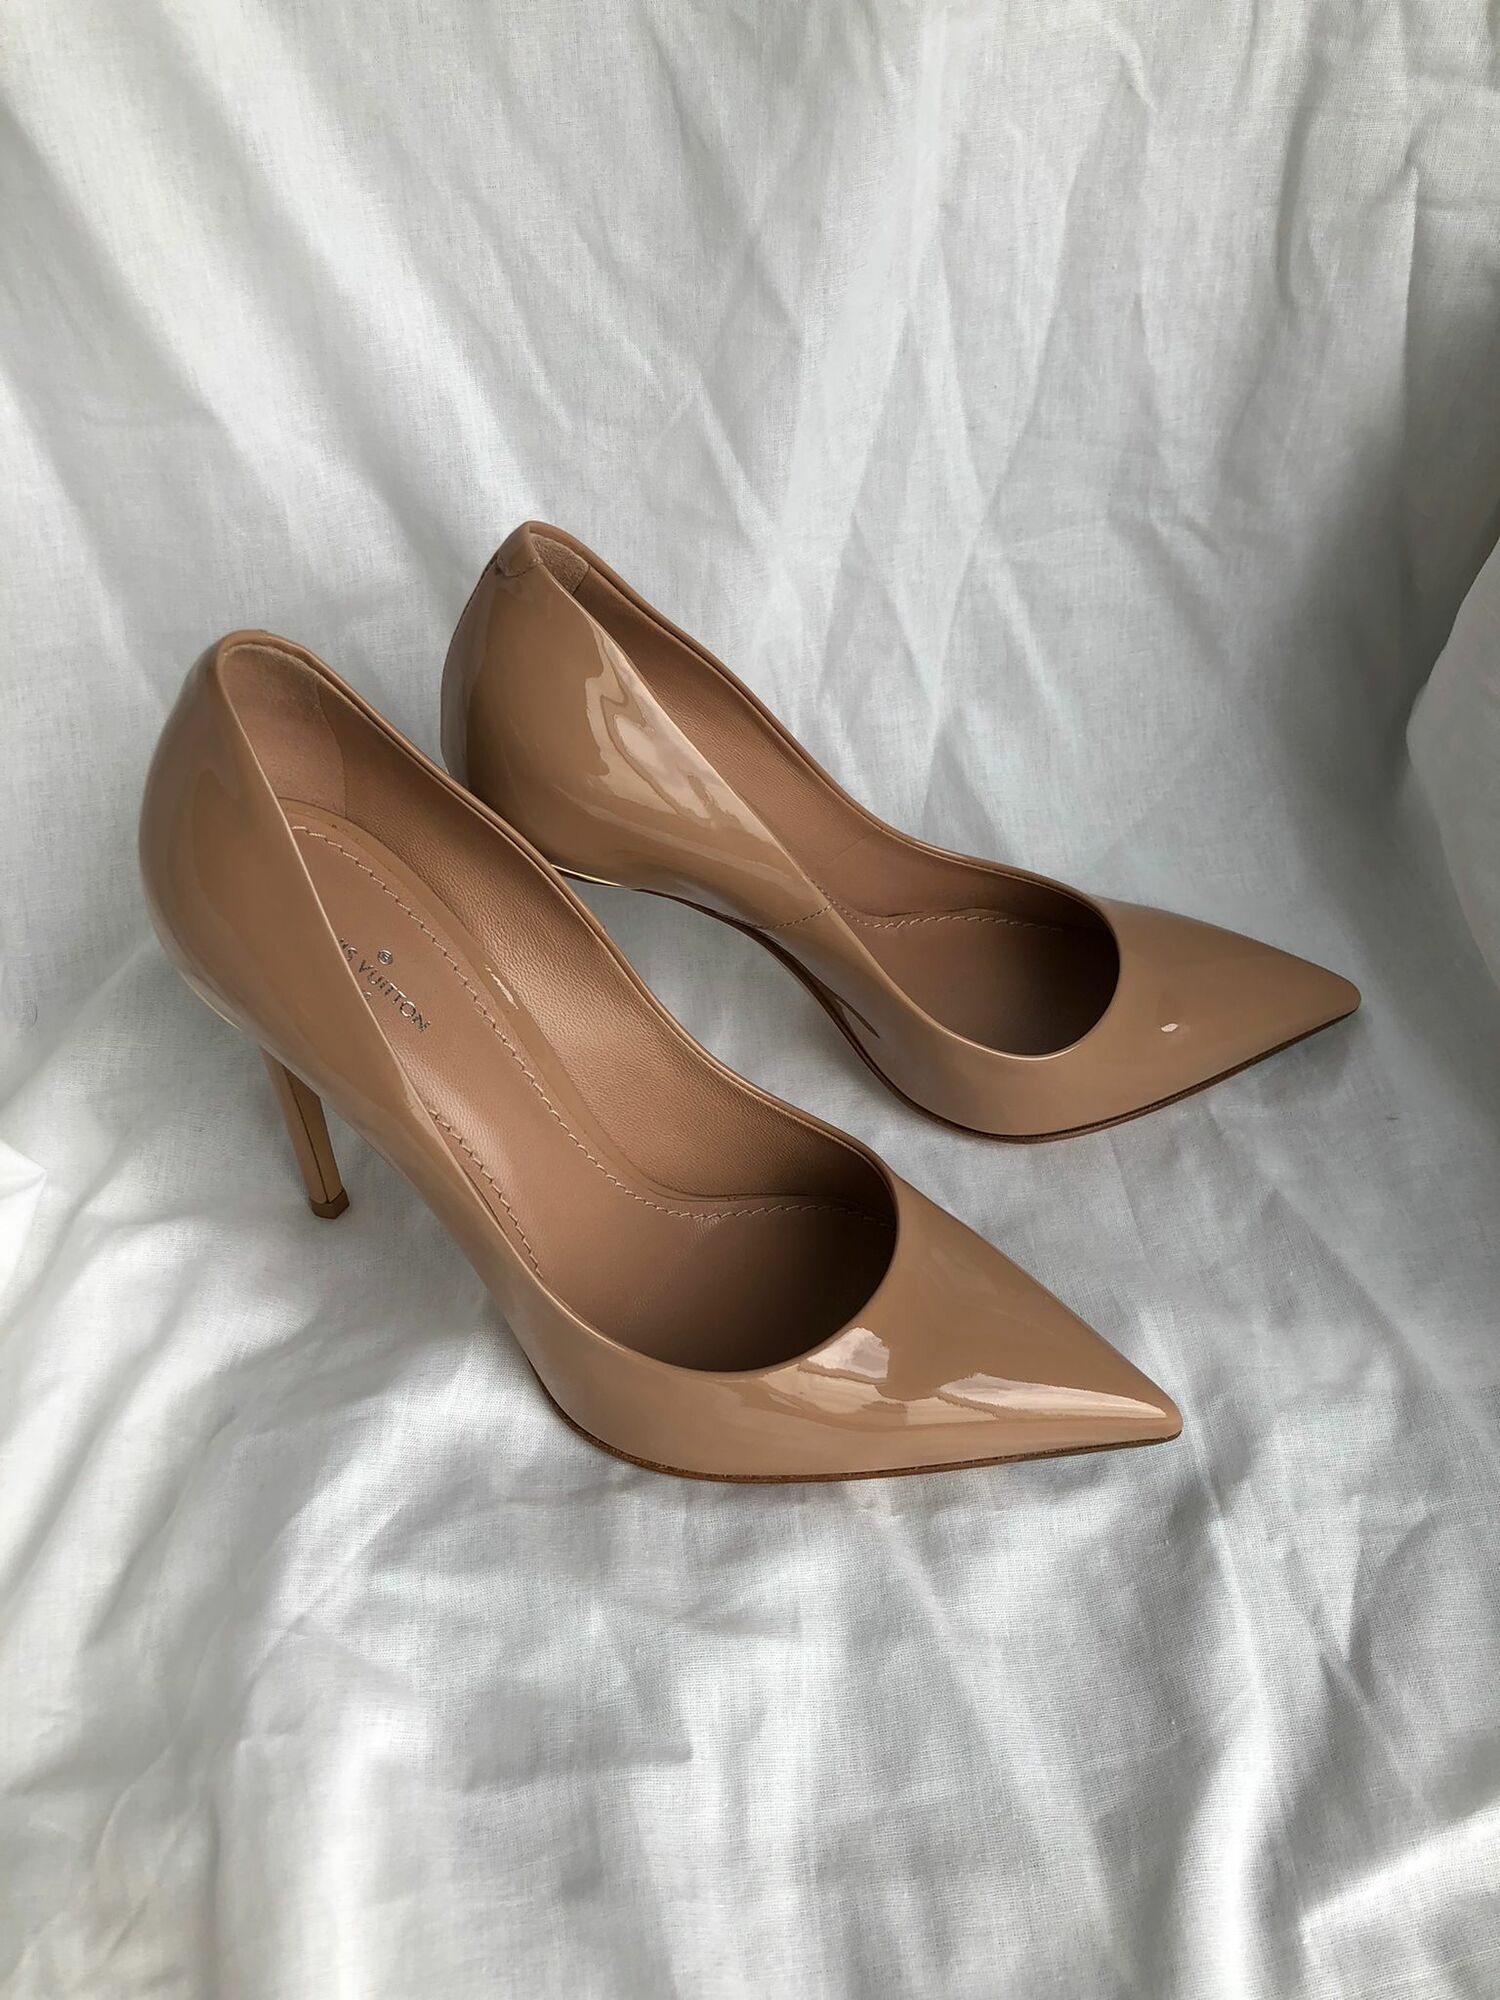 High-heeled shoe Louis Vuitton Court shoe Wedding Shoes, woman